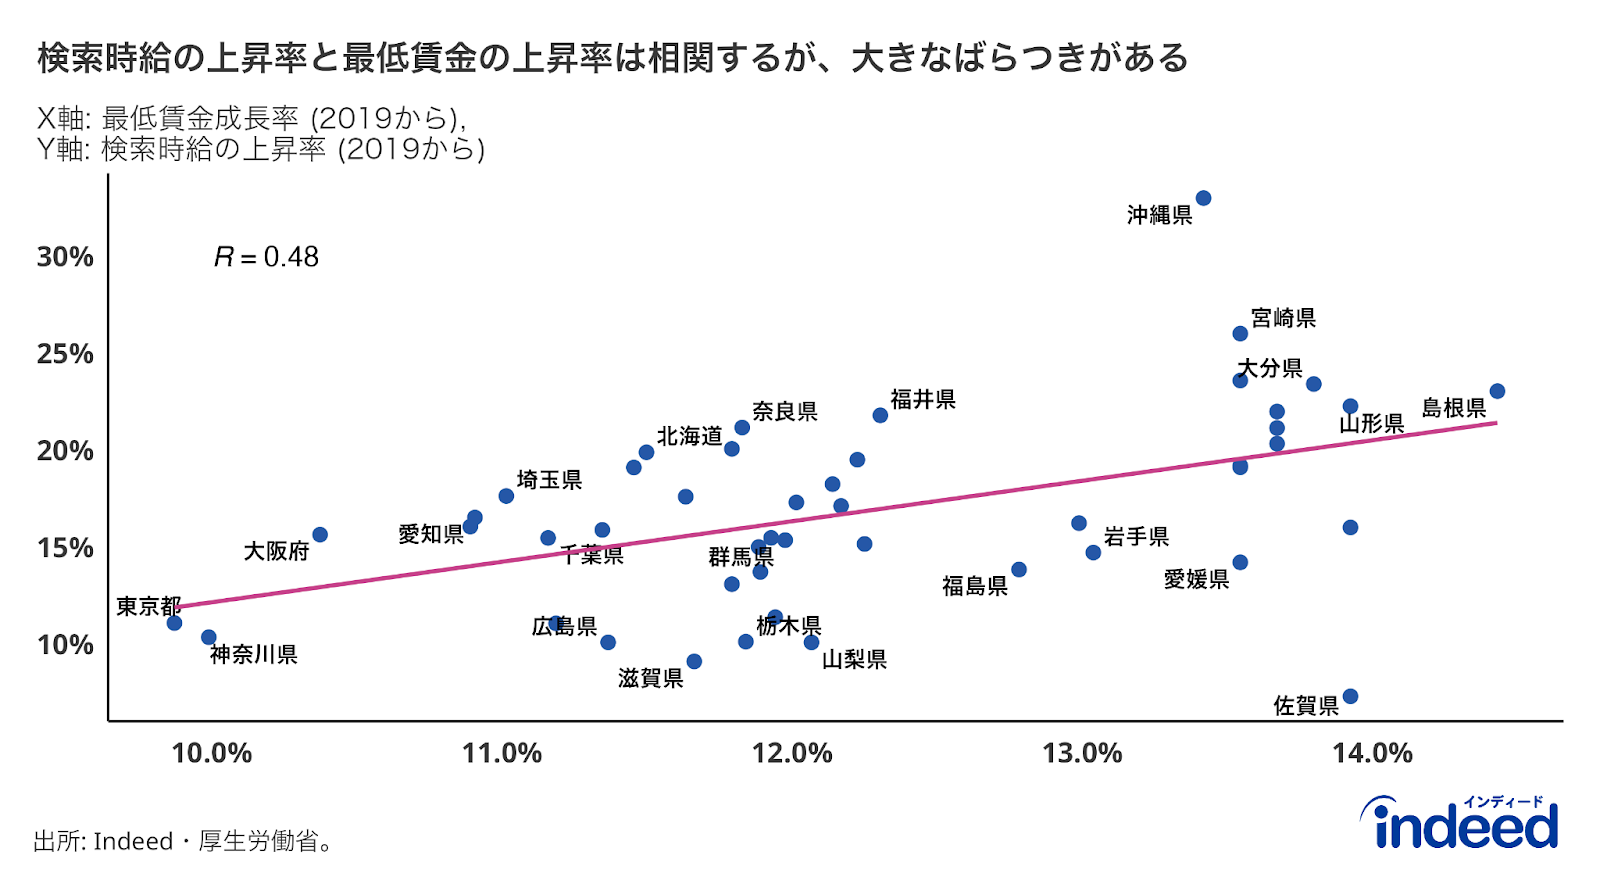 都道府県別の2019年から2023年かけての最低賃金の上昇率と検索時給の上昇率をプロットしたもの。